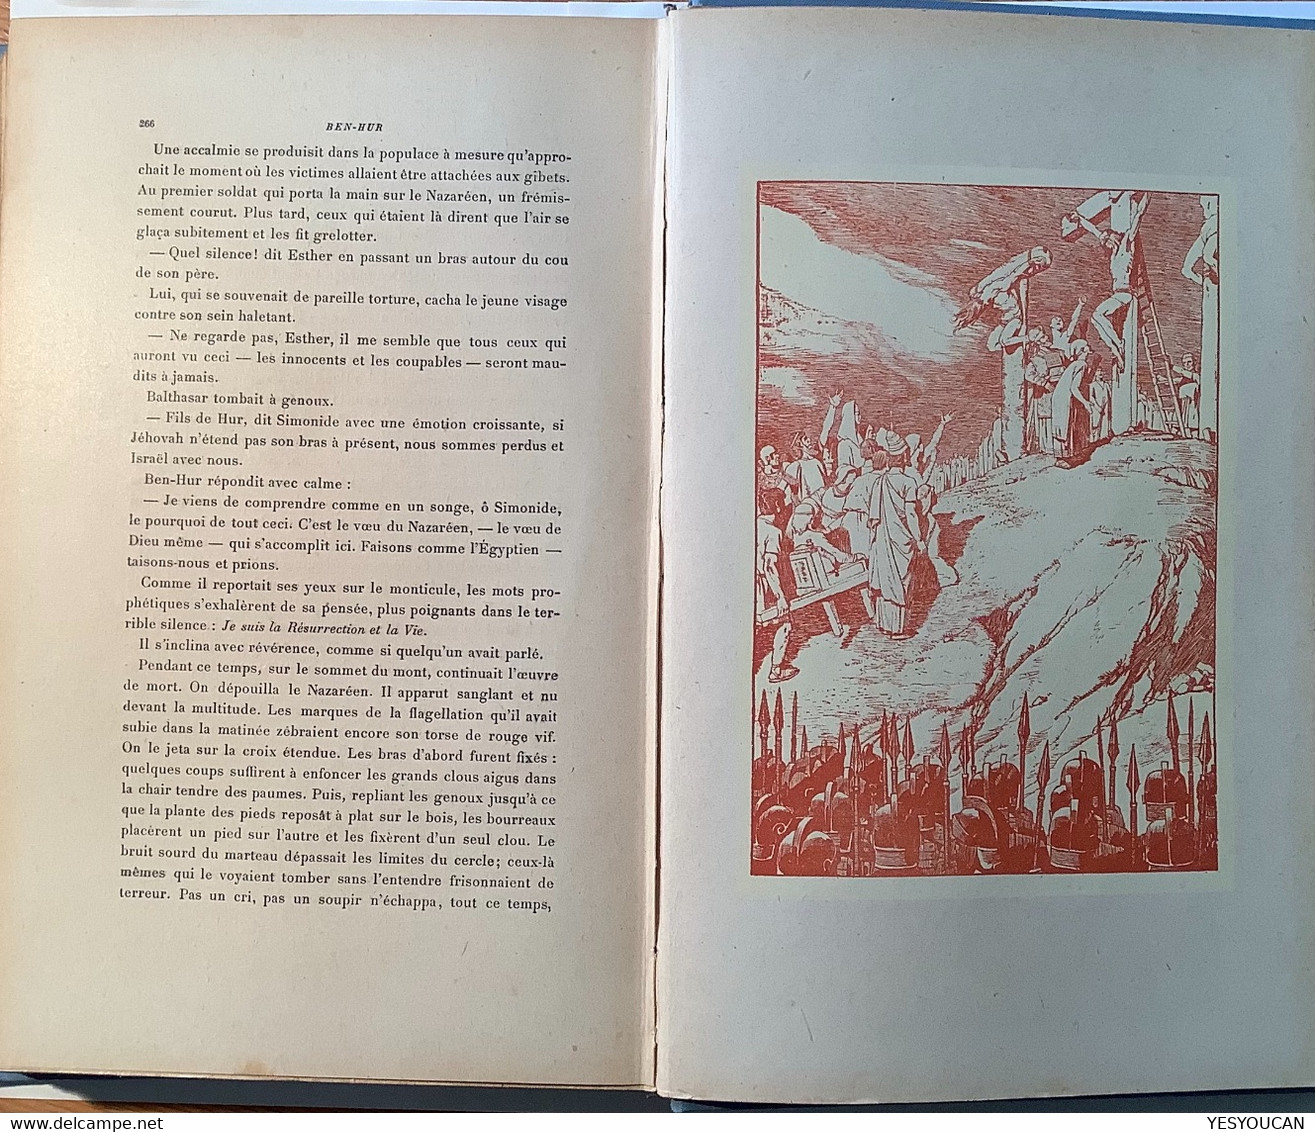 1927Ben-Hur le prince de Jérusalem LEWIS WALLACE Delagrave 2ed.illustration Auguste Leroux (livre Bible Romain Palestine